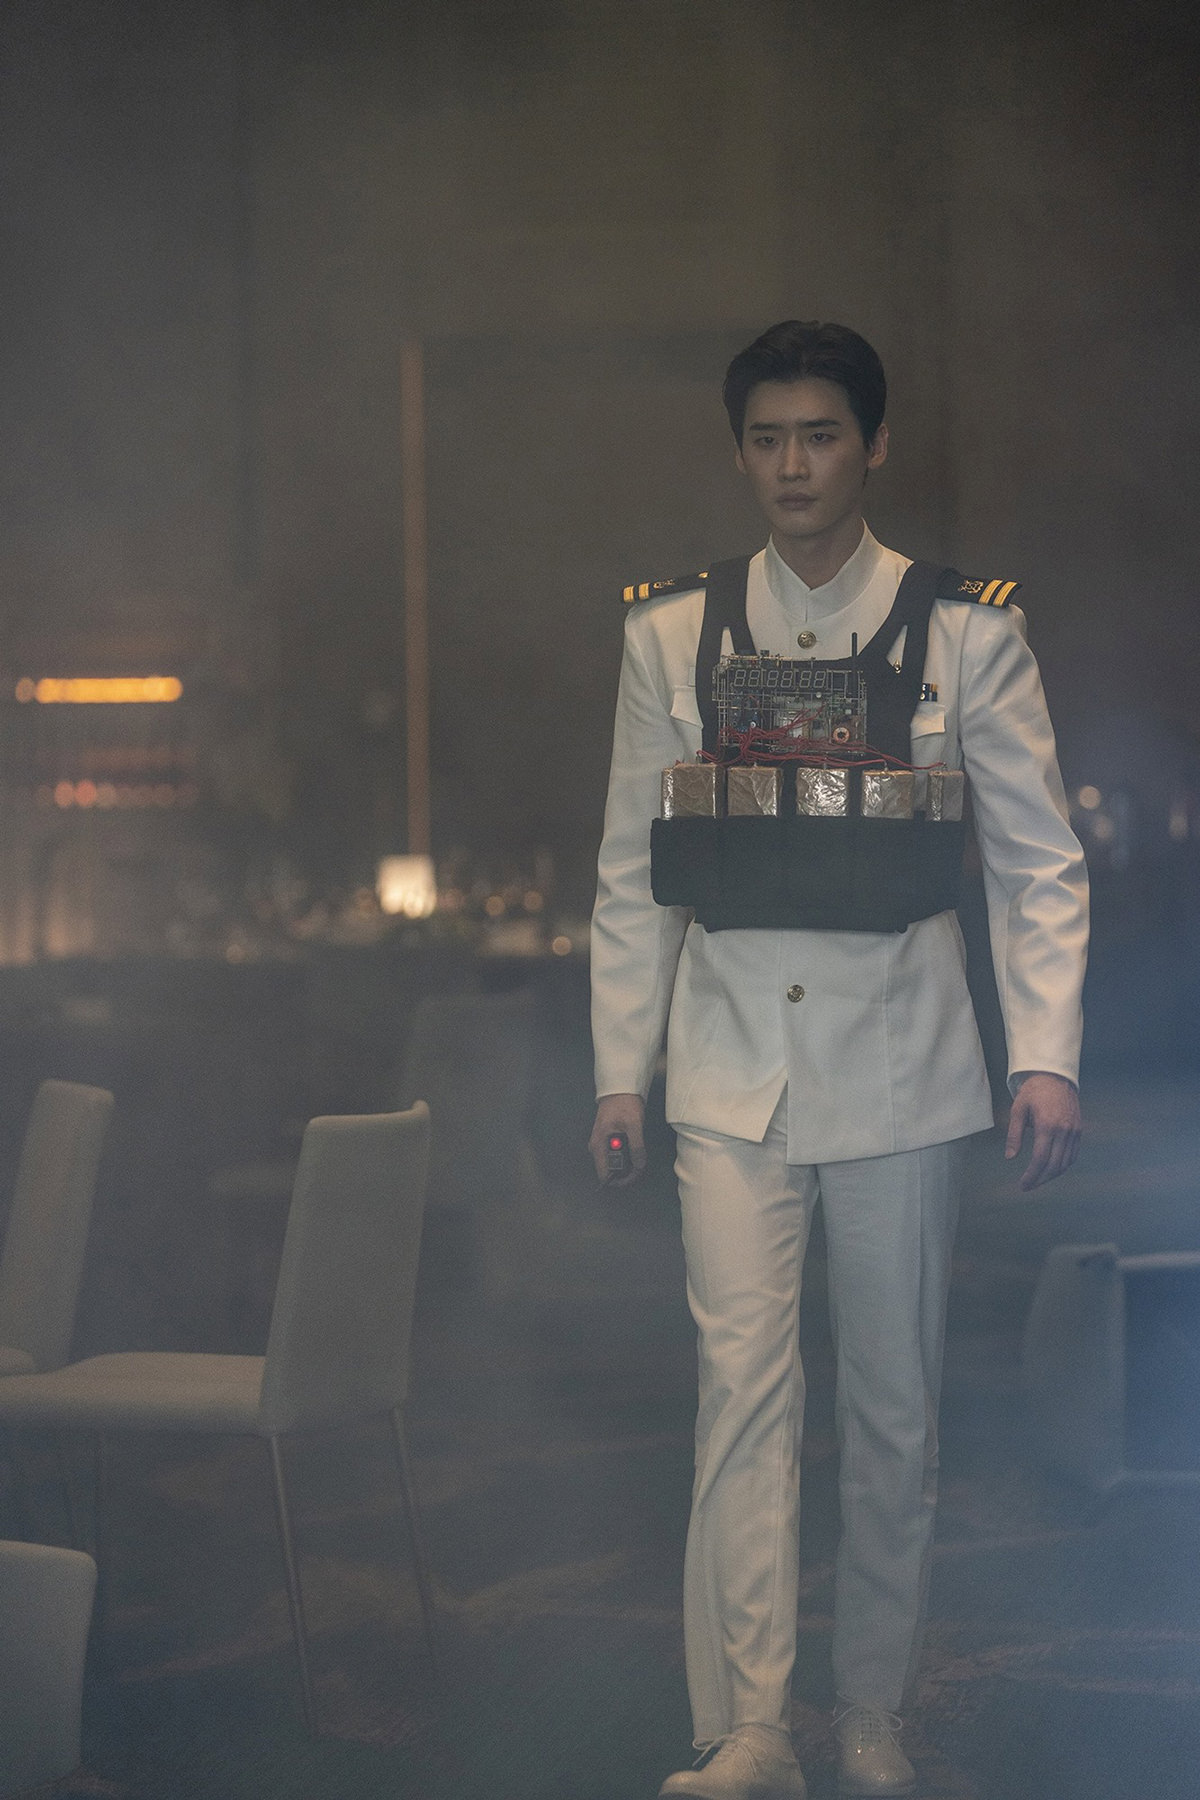 音爆浩劫 新聞稿照09 出道12年的李鍾碩，在本作中飾演一名海軍出身的神祕炸彈設計者，展現前所未見的樣貌